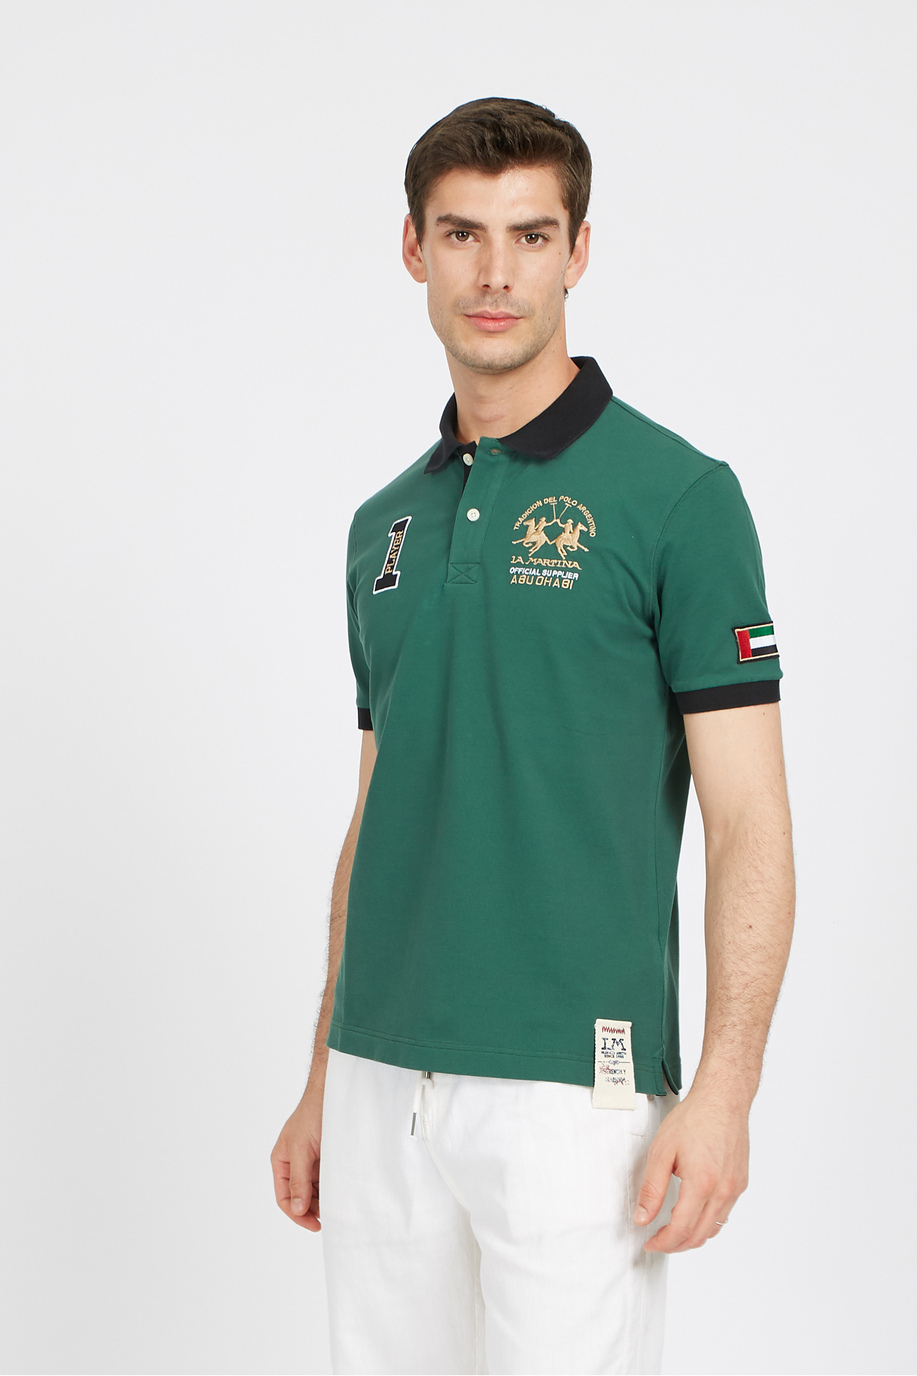 Herren-Kurzarm-Poloshirt aus Stretch-Baumwolle mit normaler Passform - Vallee - Poloshirts | La Martina - Official Online Shop